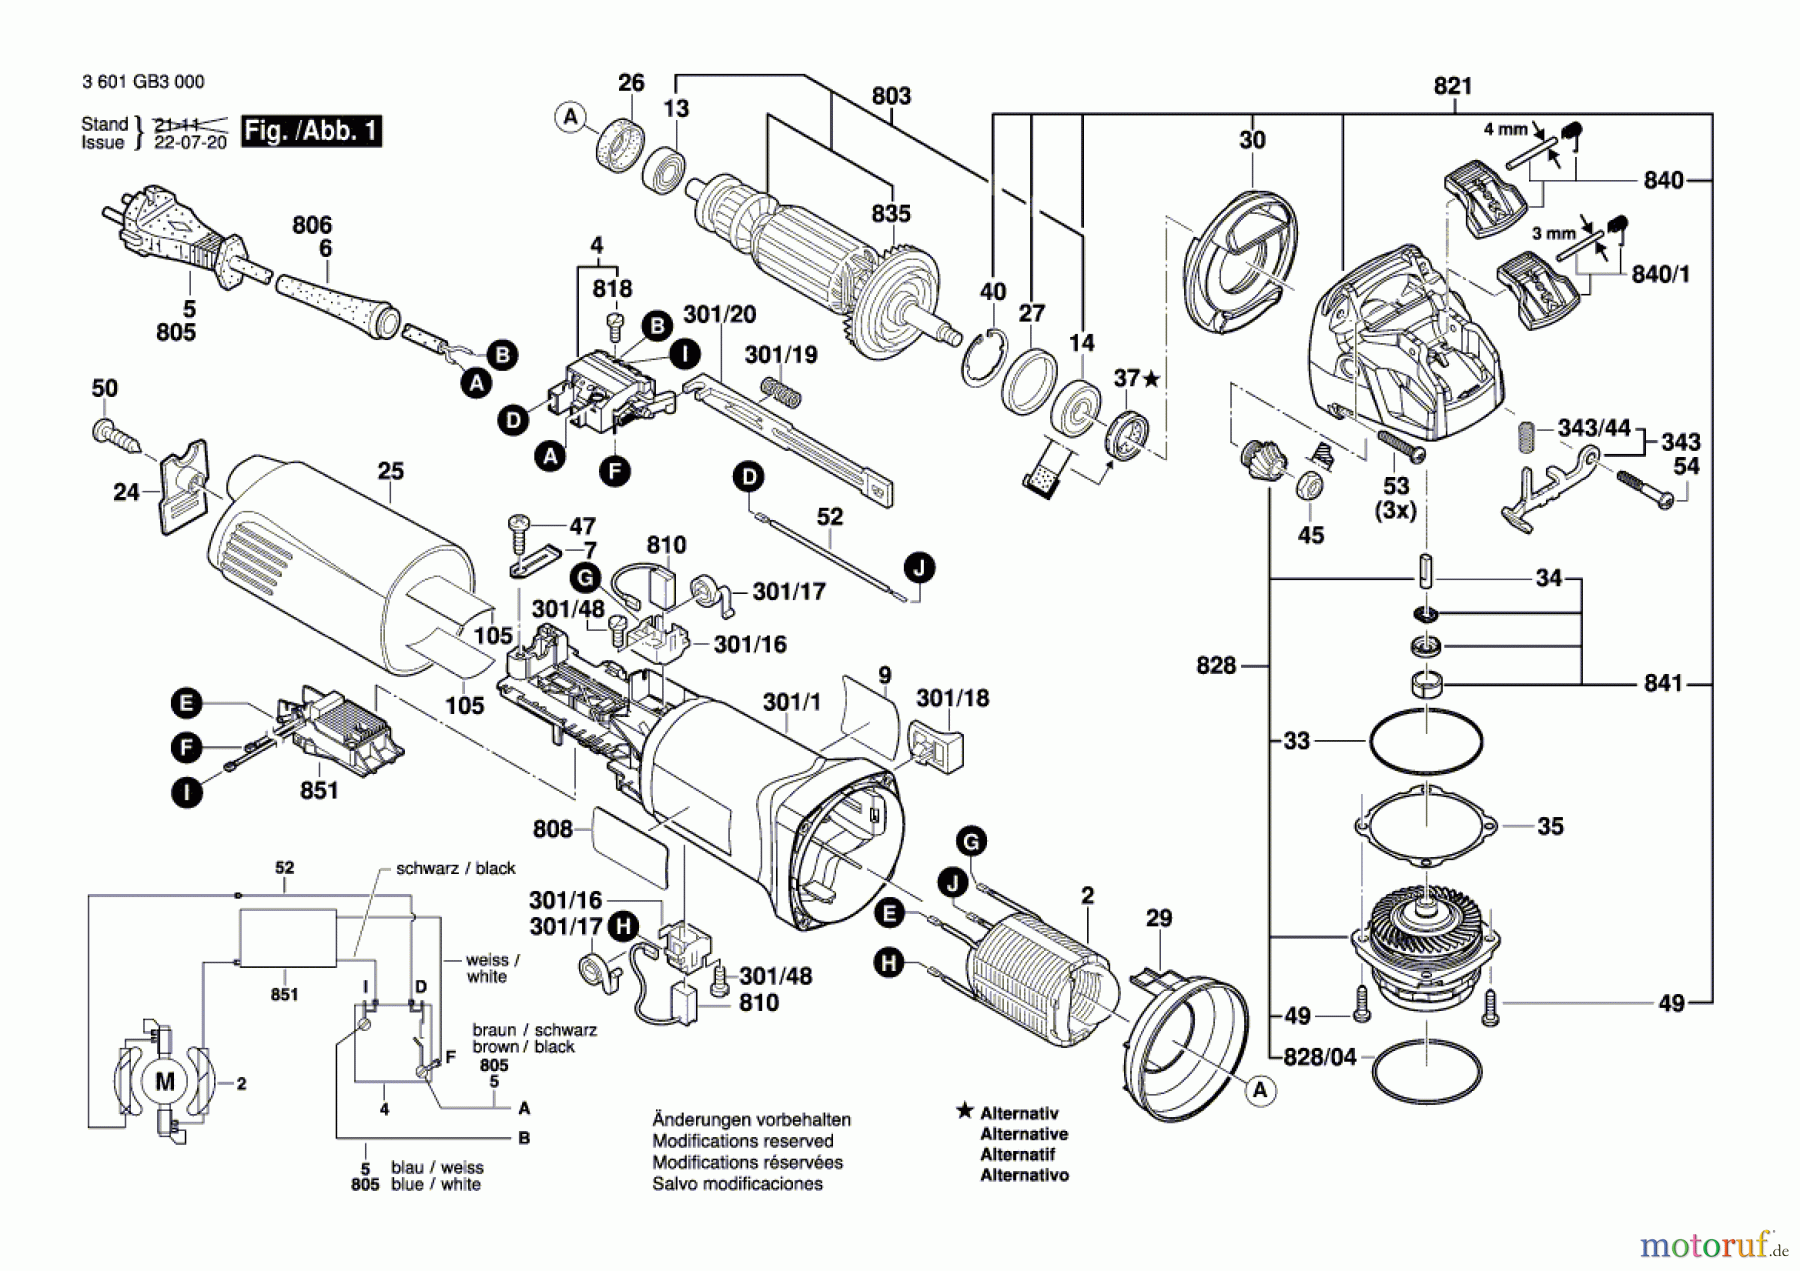  Bosch Werkzeug Winkelschleifer GWX 10-125 Seite 1